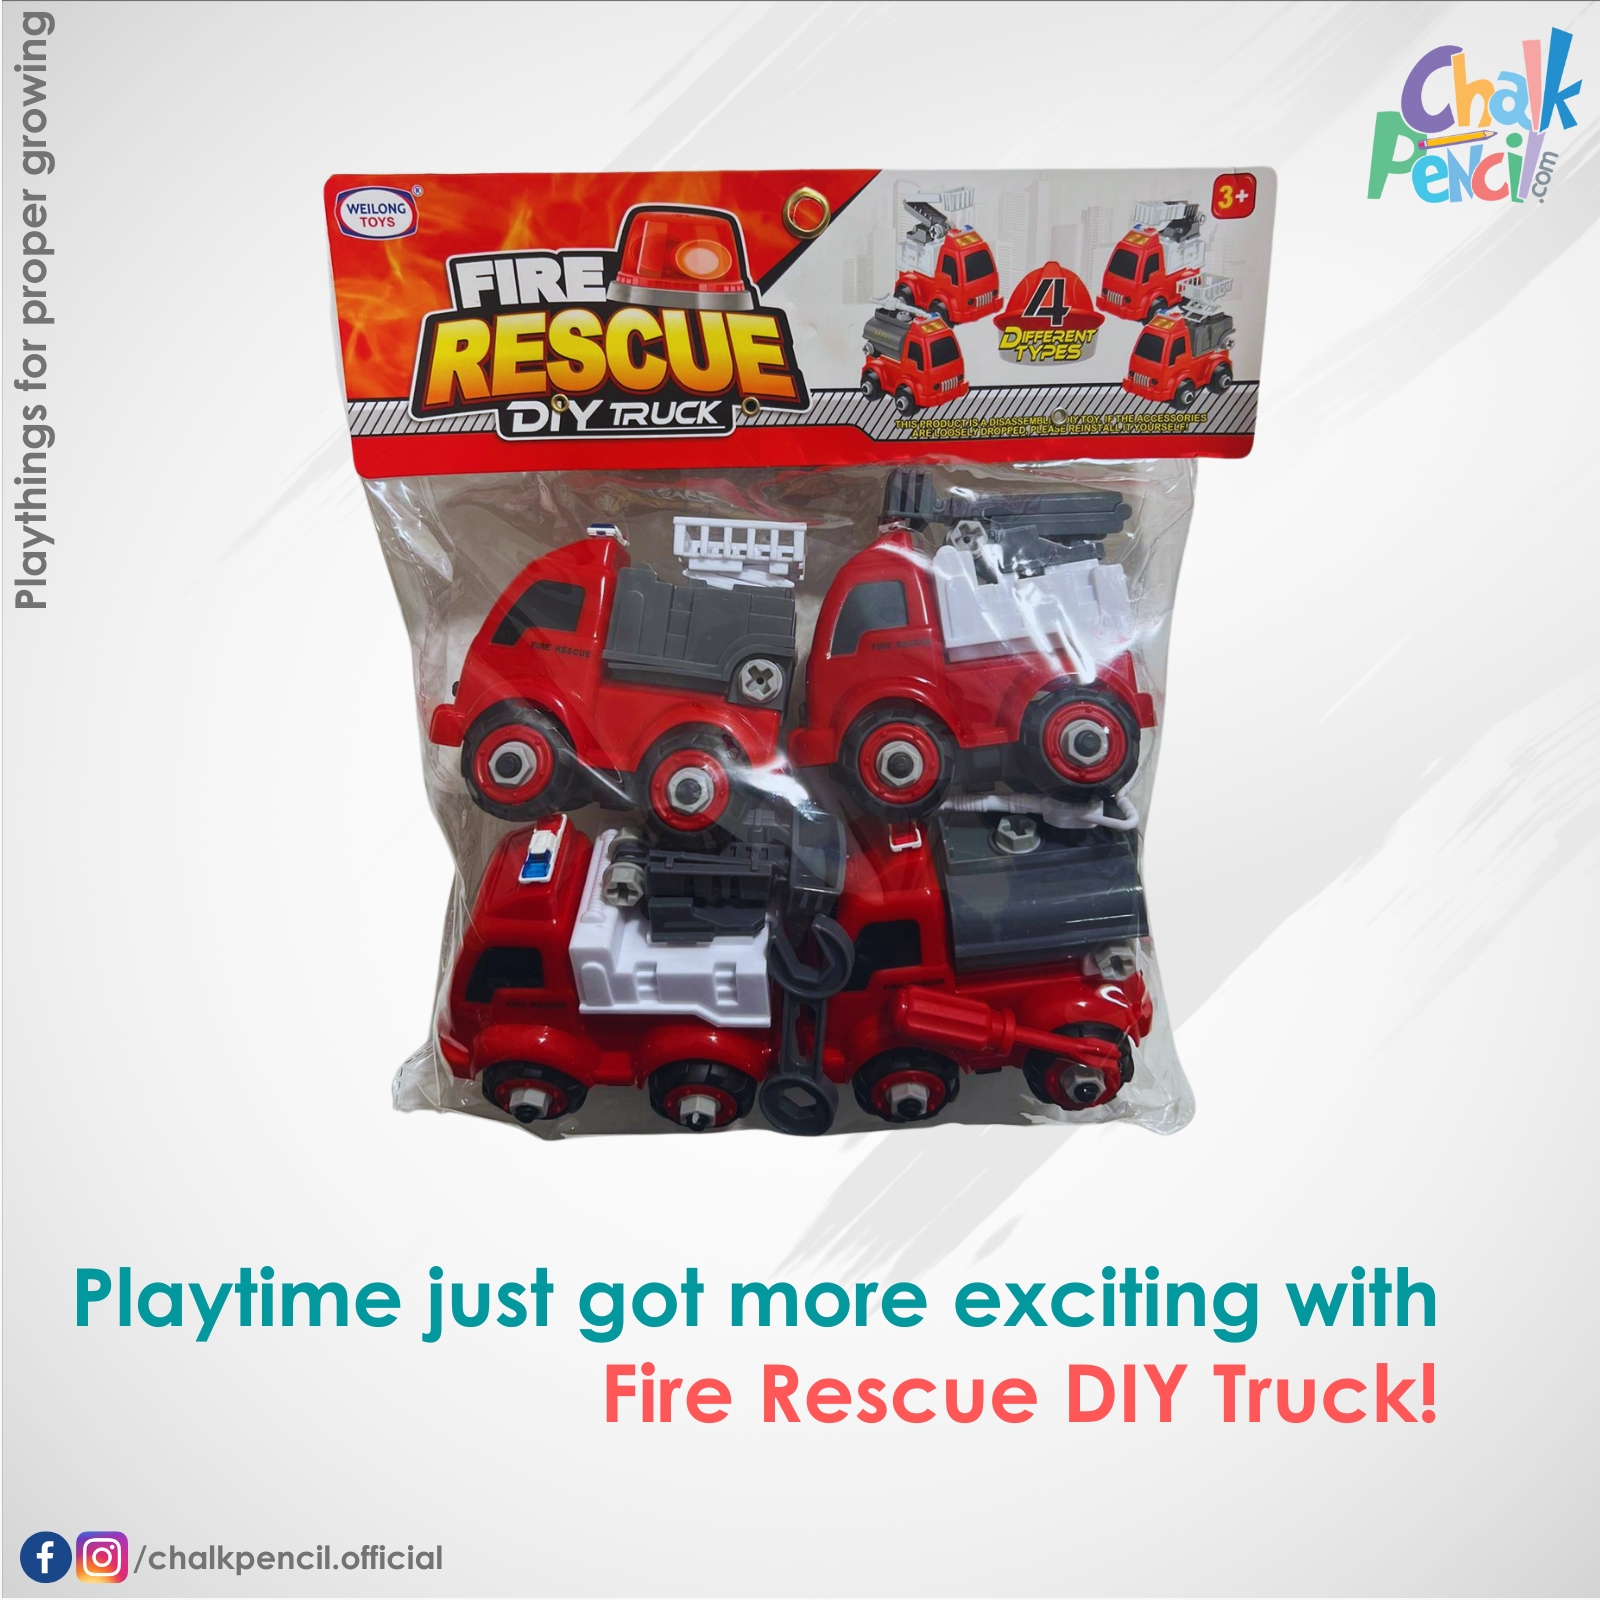 Fire Rescue DIY Truck